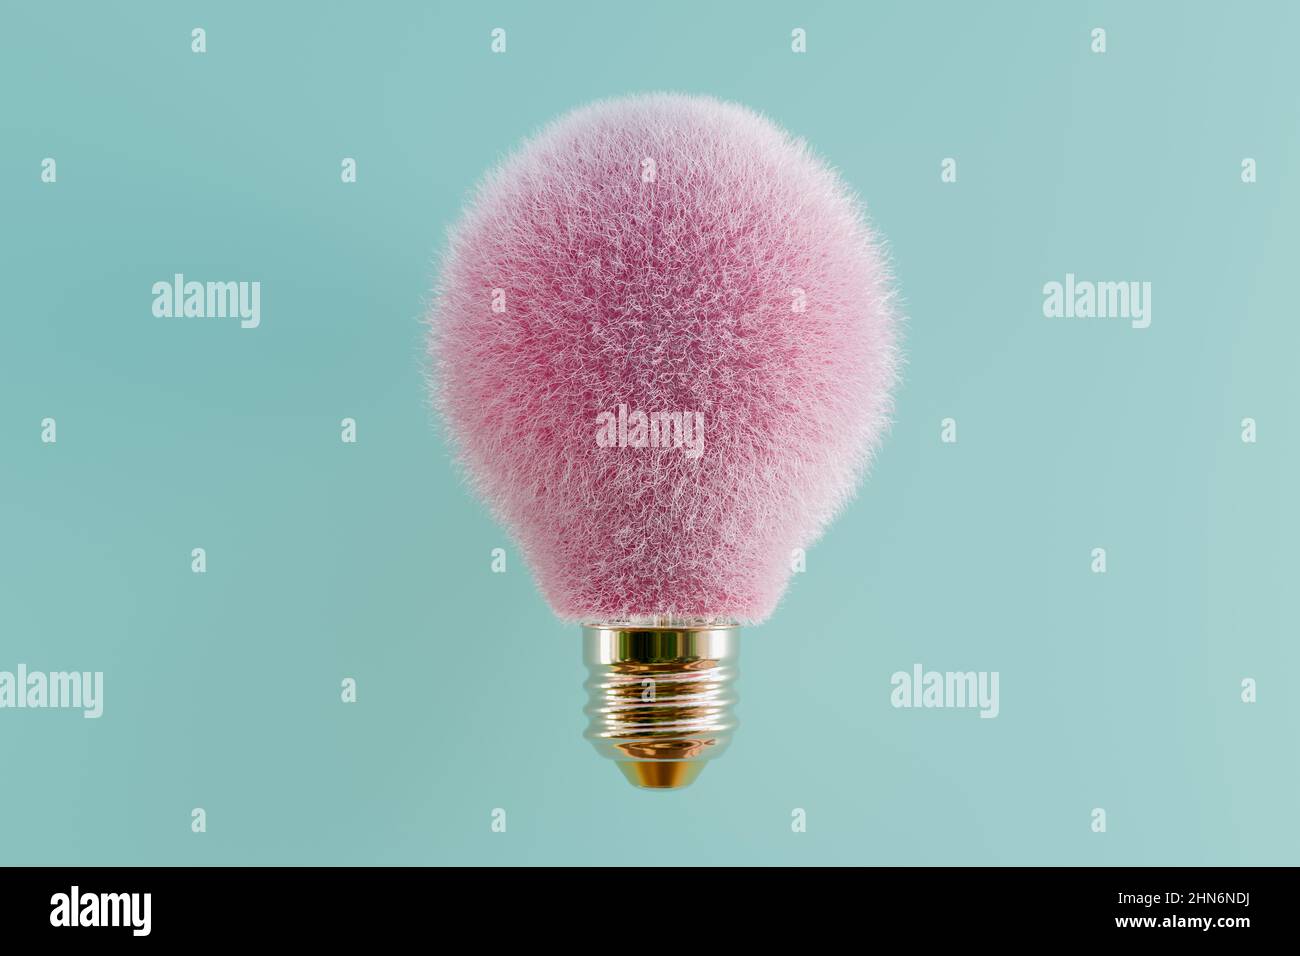 Hairy light bulb 3D rendering Stock Photo